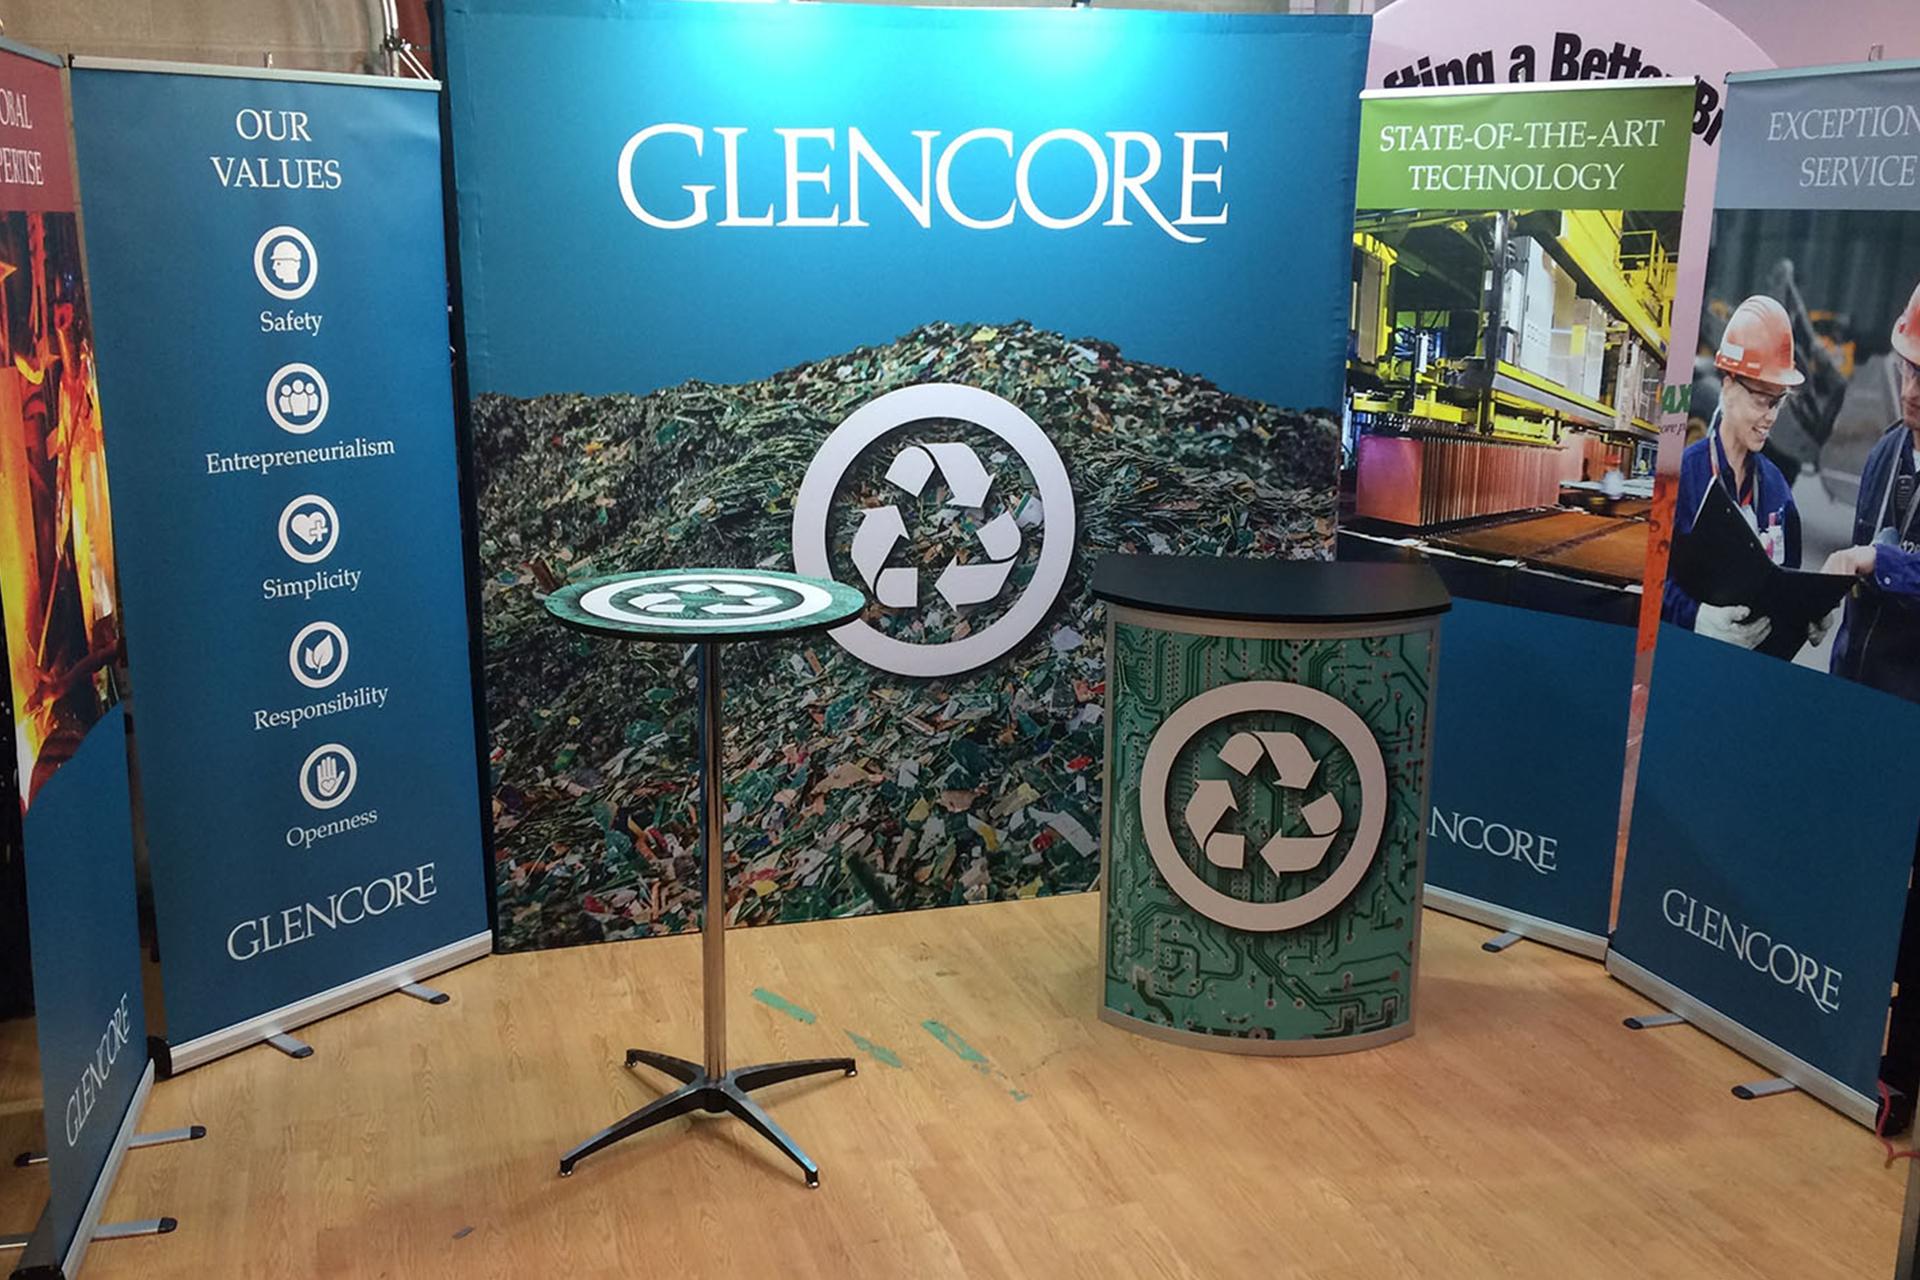 Glencore New Exhibit Campaign